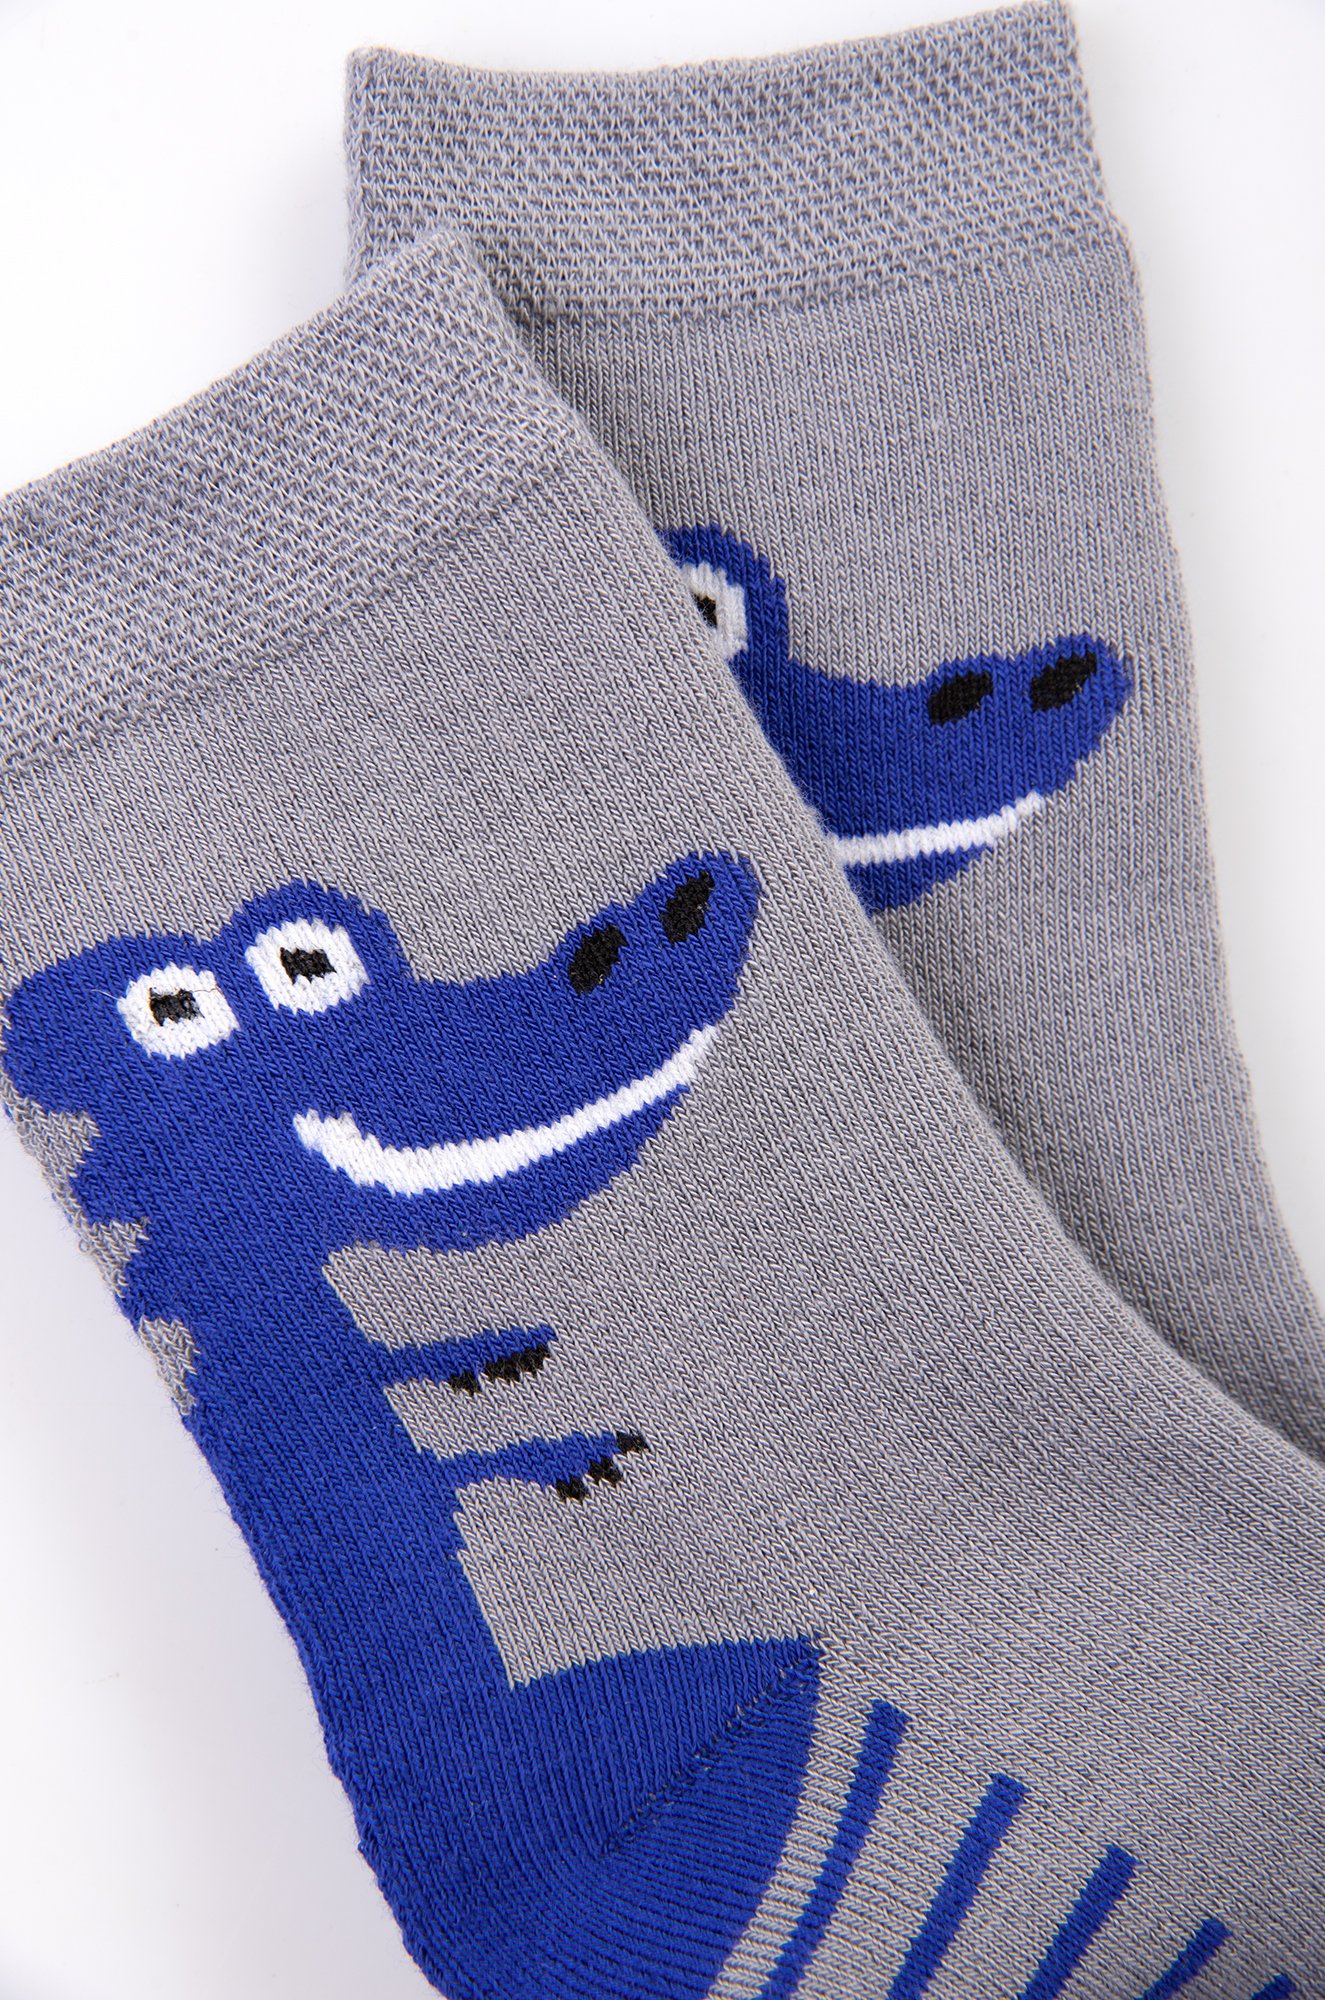 Носки махровые для мальчика Para socks